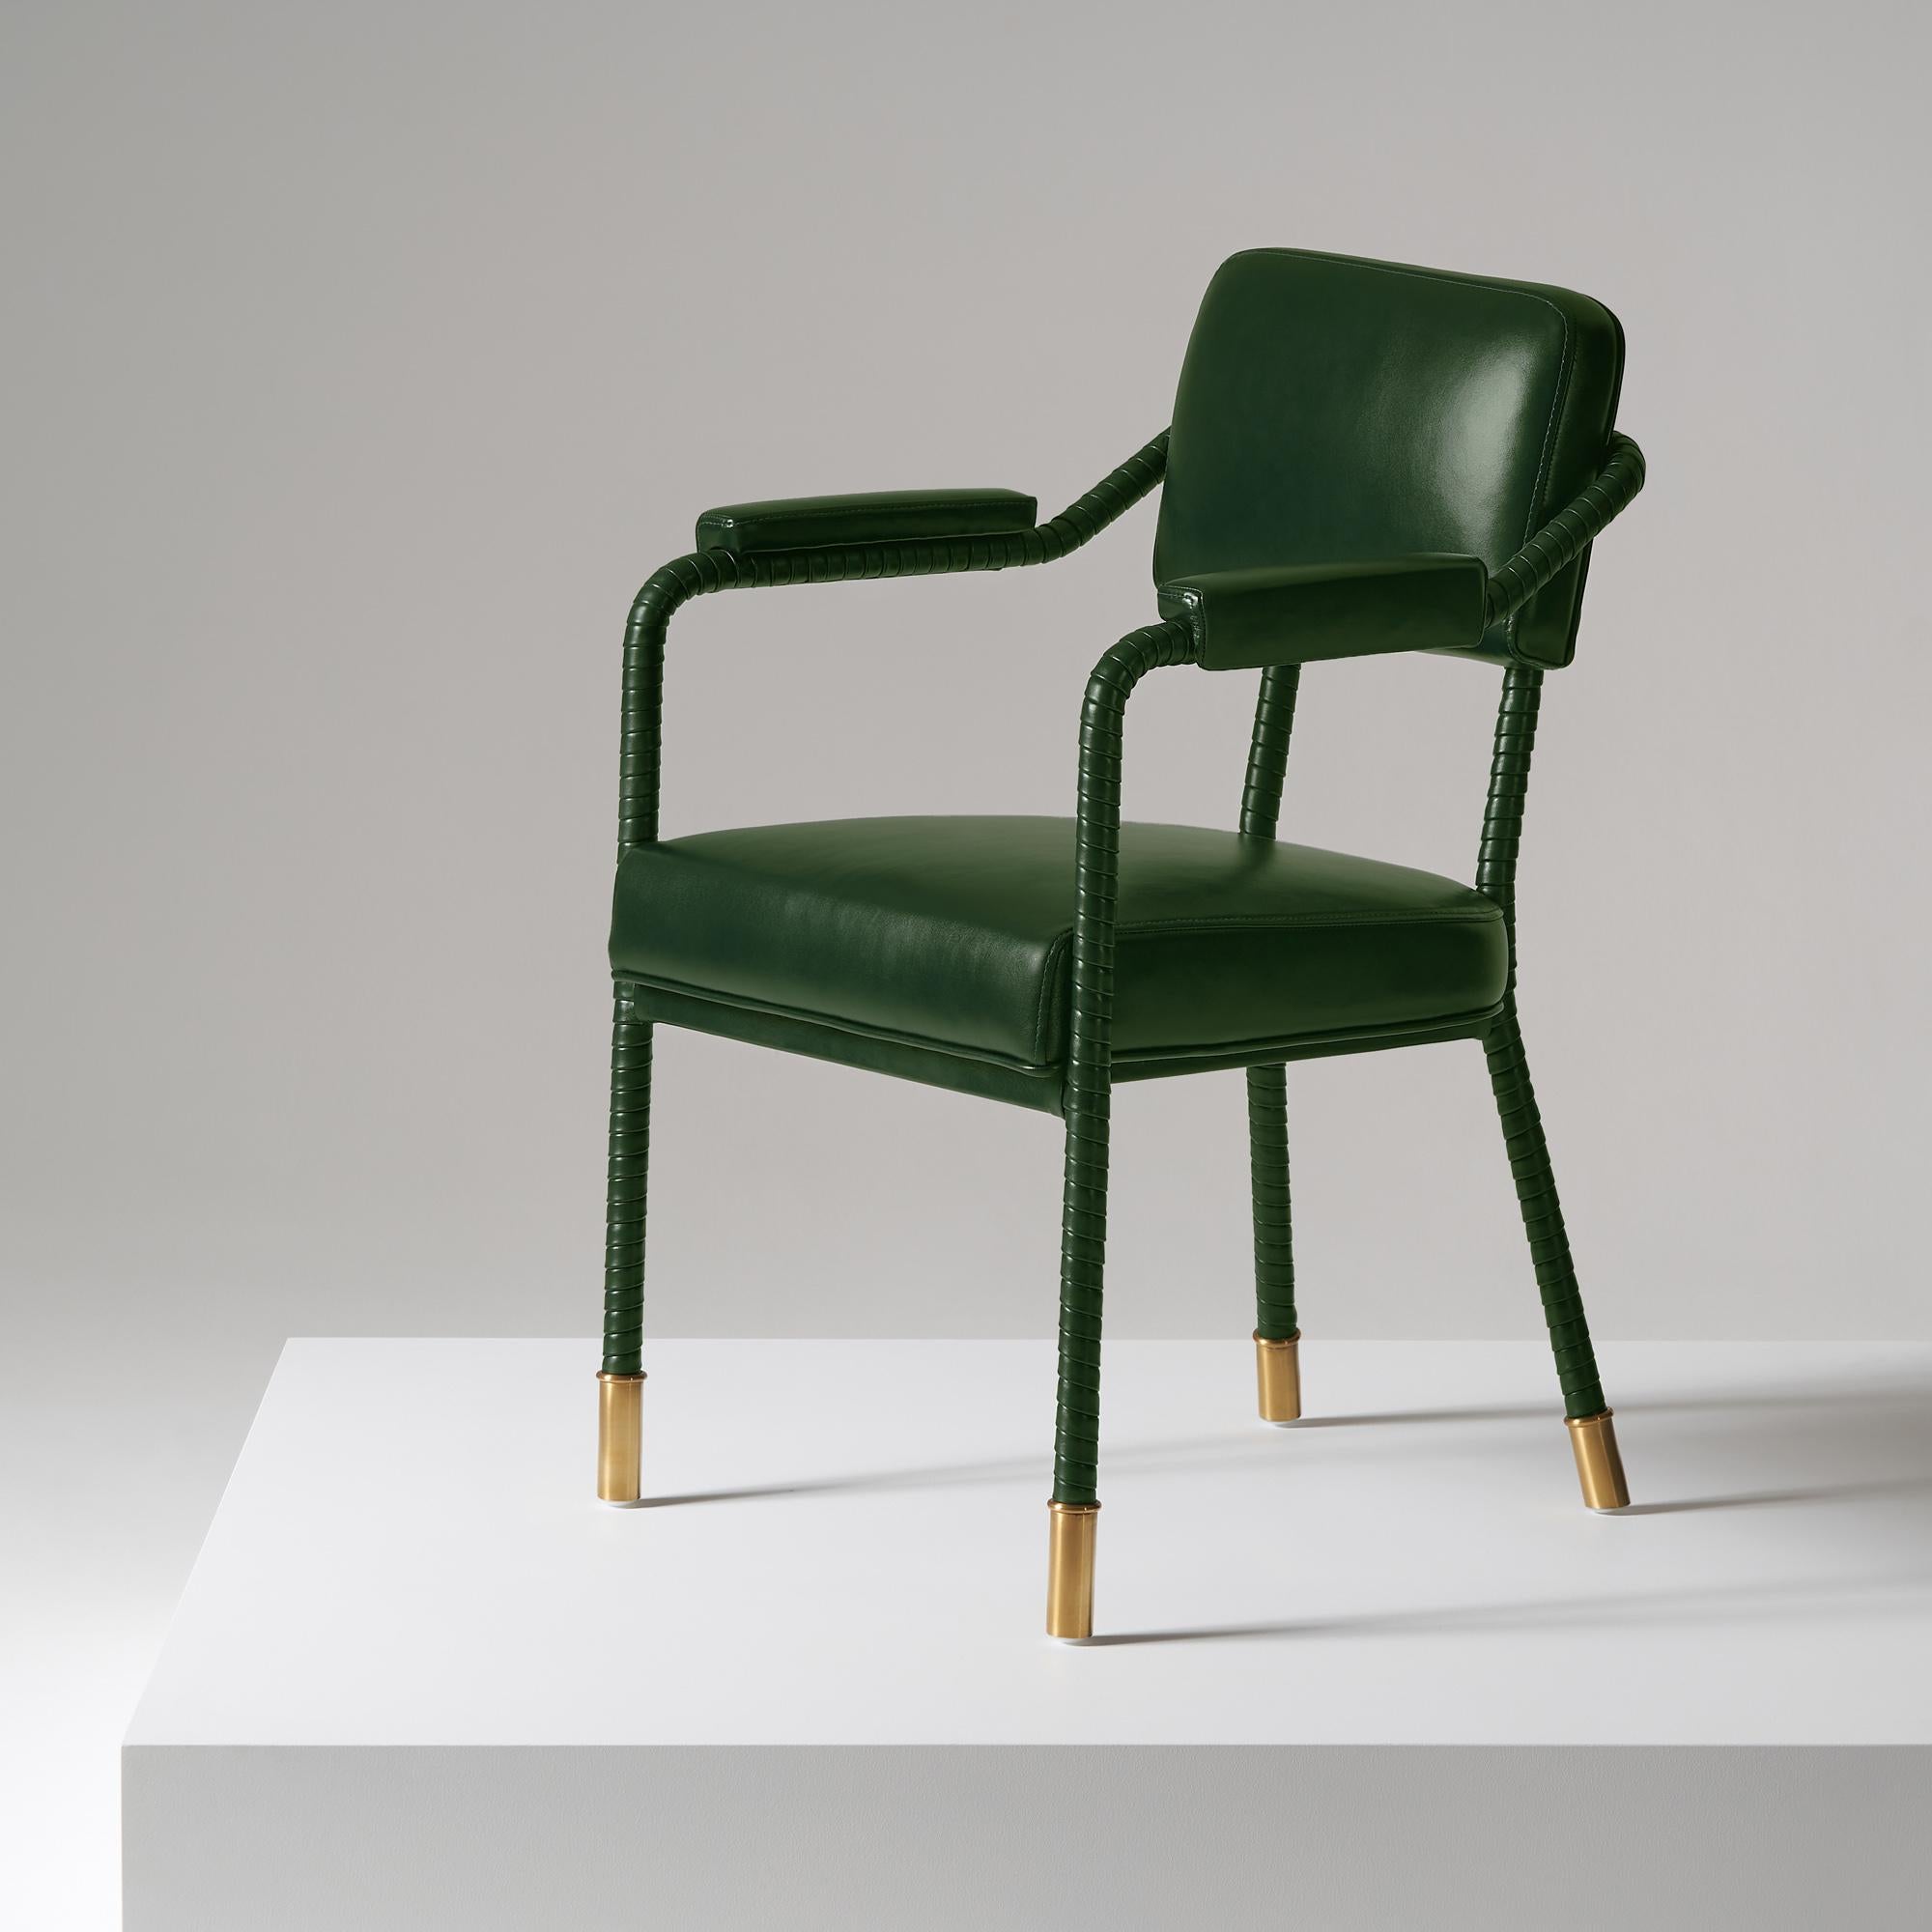 And Objects, studio de design de produits fondé par Martin Brudnizki et Nick Jeanes et basé à Londres.

La chaise de salle à manger Easton est fabriquée de manière unique à partir d'acier inoxydable et de cuir italien. Le cuir enveloppé à la main